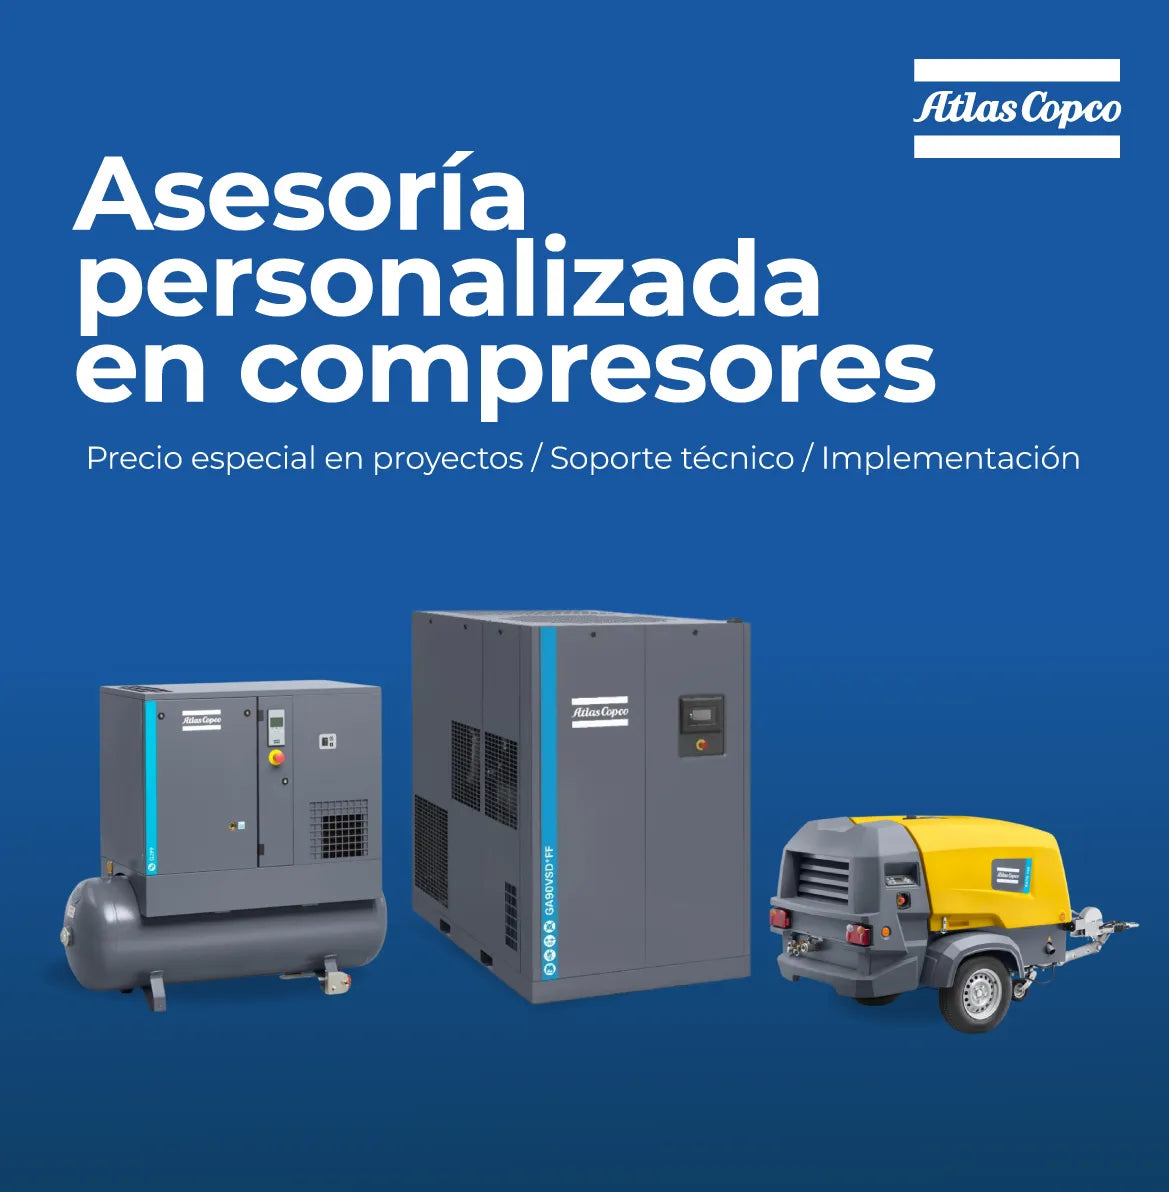 Compresores-de-aire-compresores-de-piston-compresores-de-tornillo-Atlas-copco_industrias-gsl_1